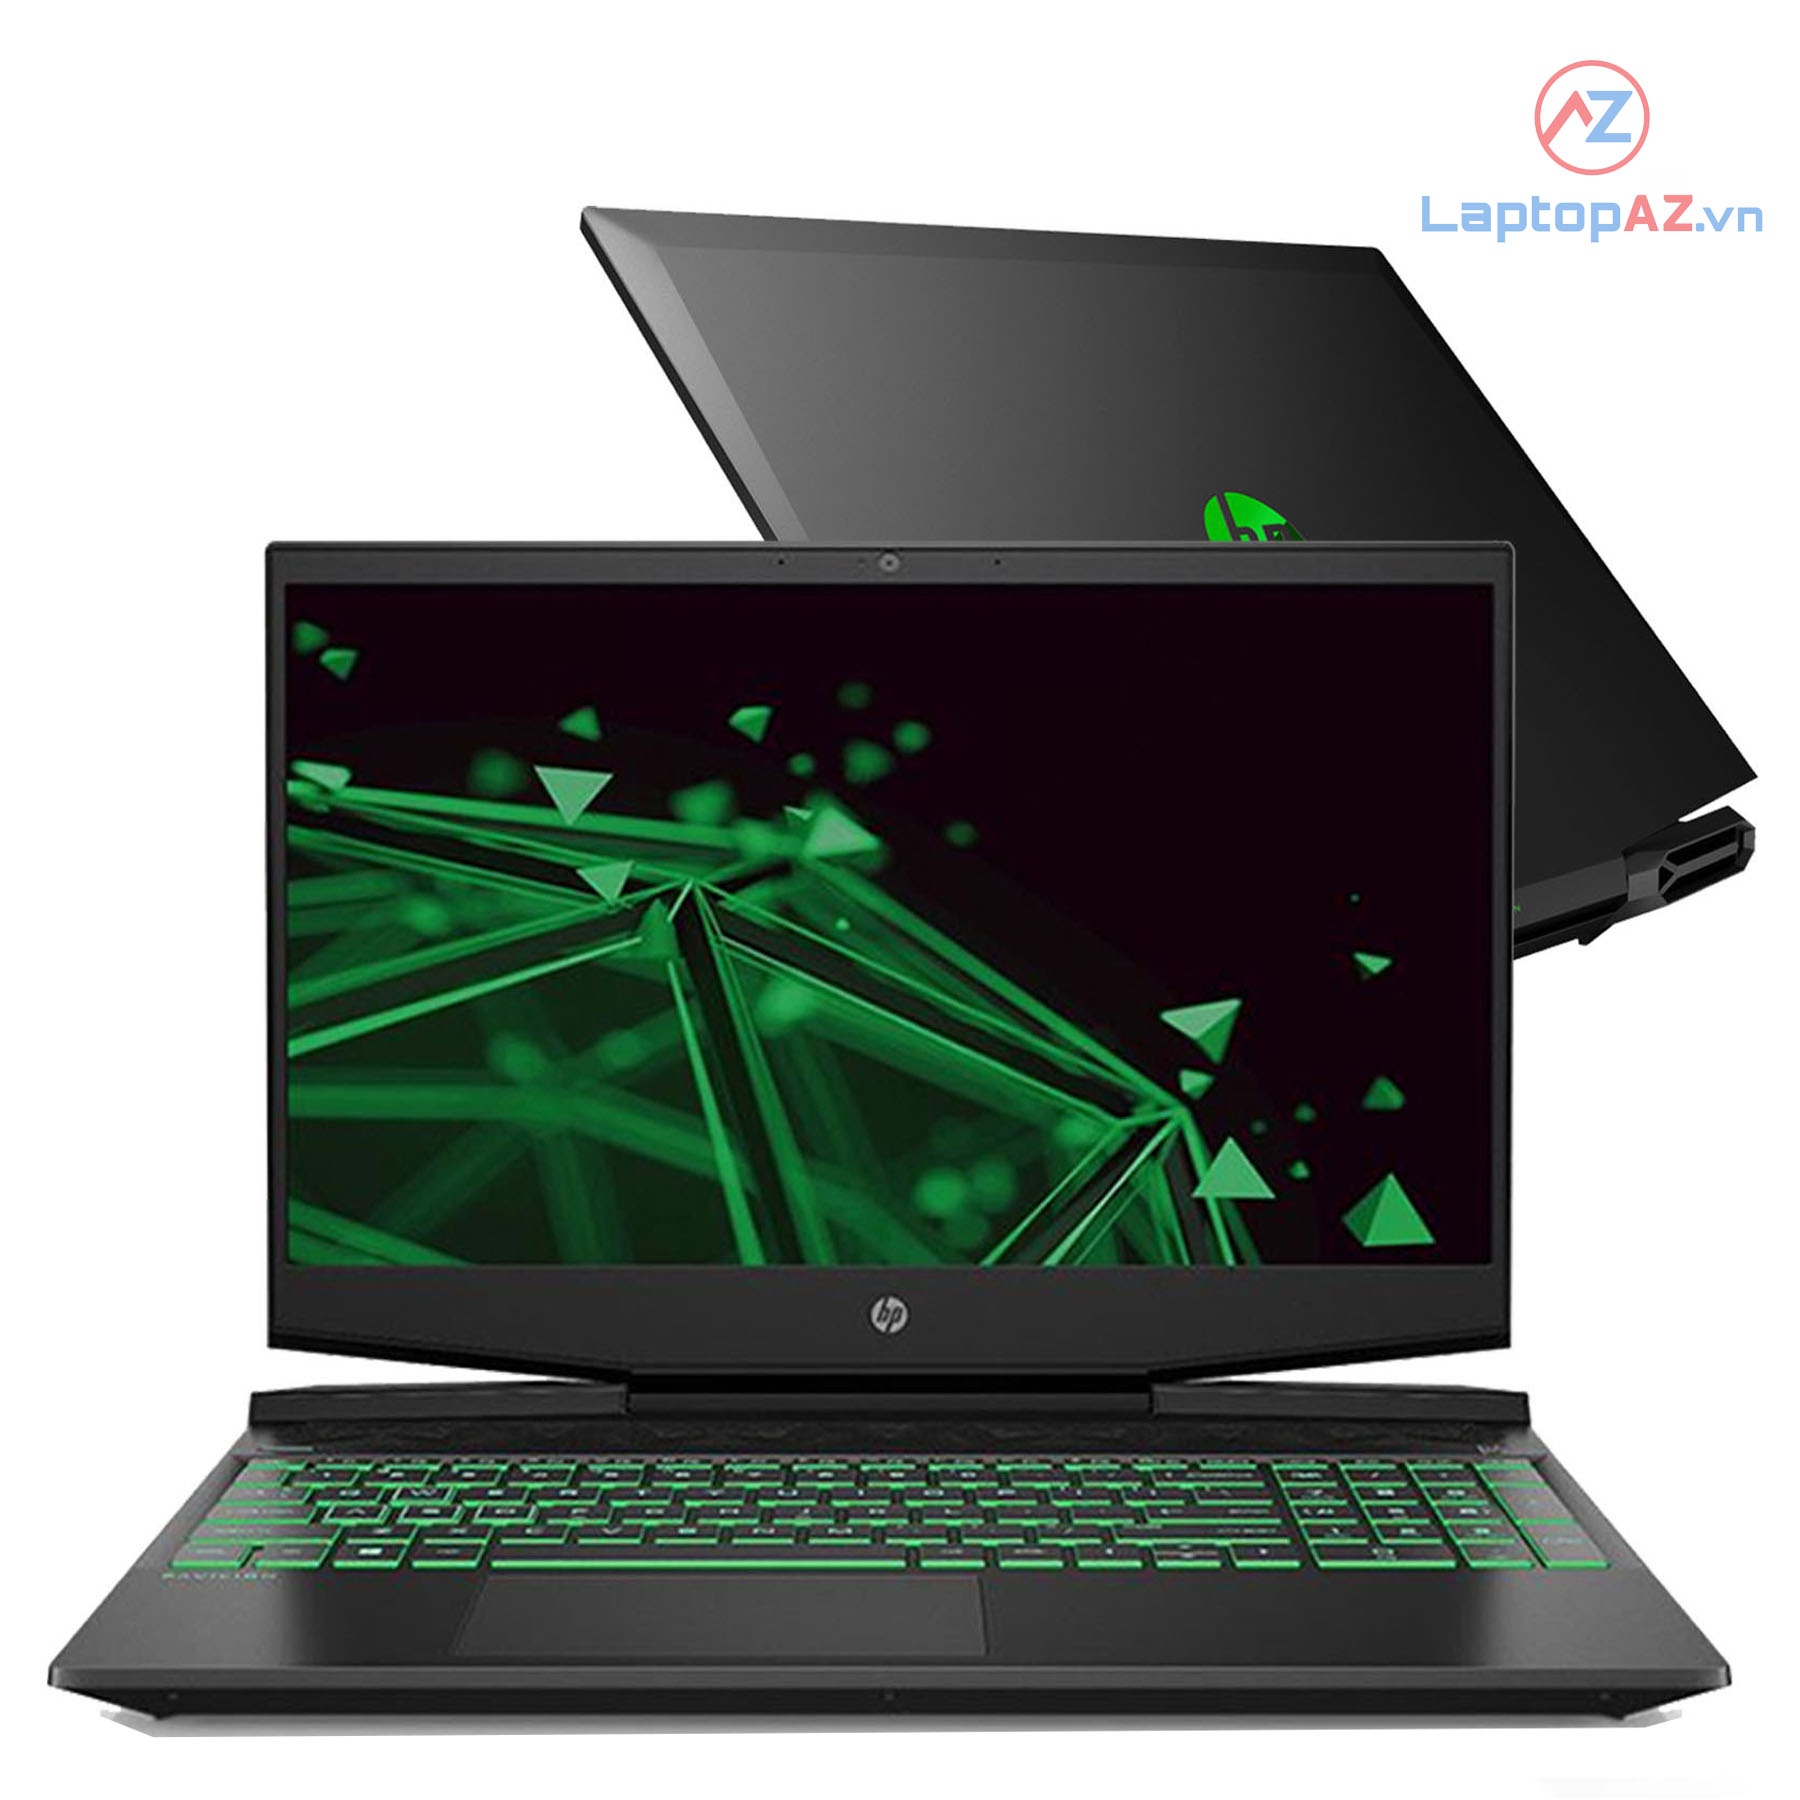  [Mới 99%] Laptop HP Pavilion Gaming  (Core i5 9300H, 8GB, 256GB, VGA 4GB GTX 1650, 15.6 FHD IPS)